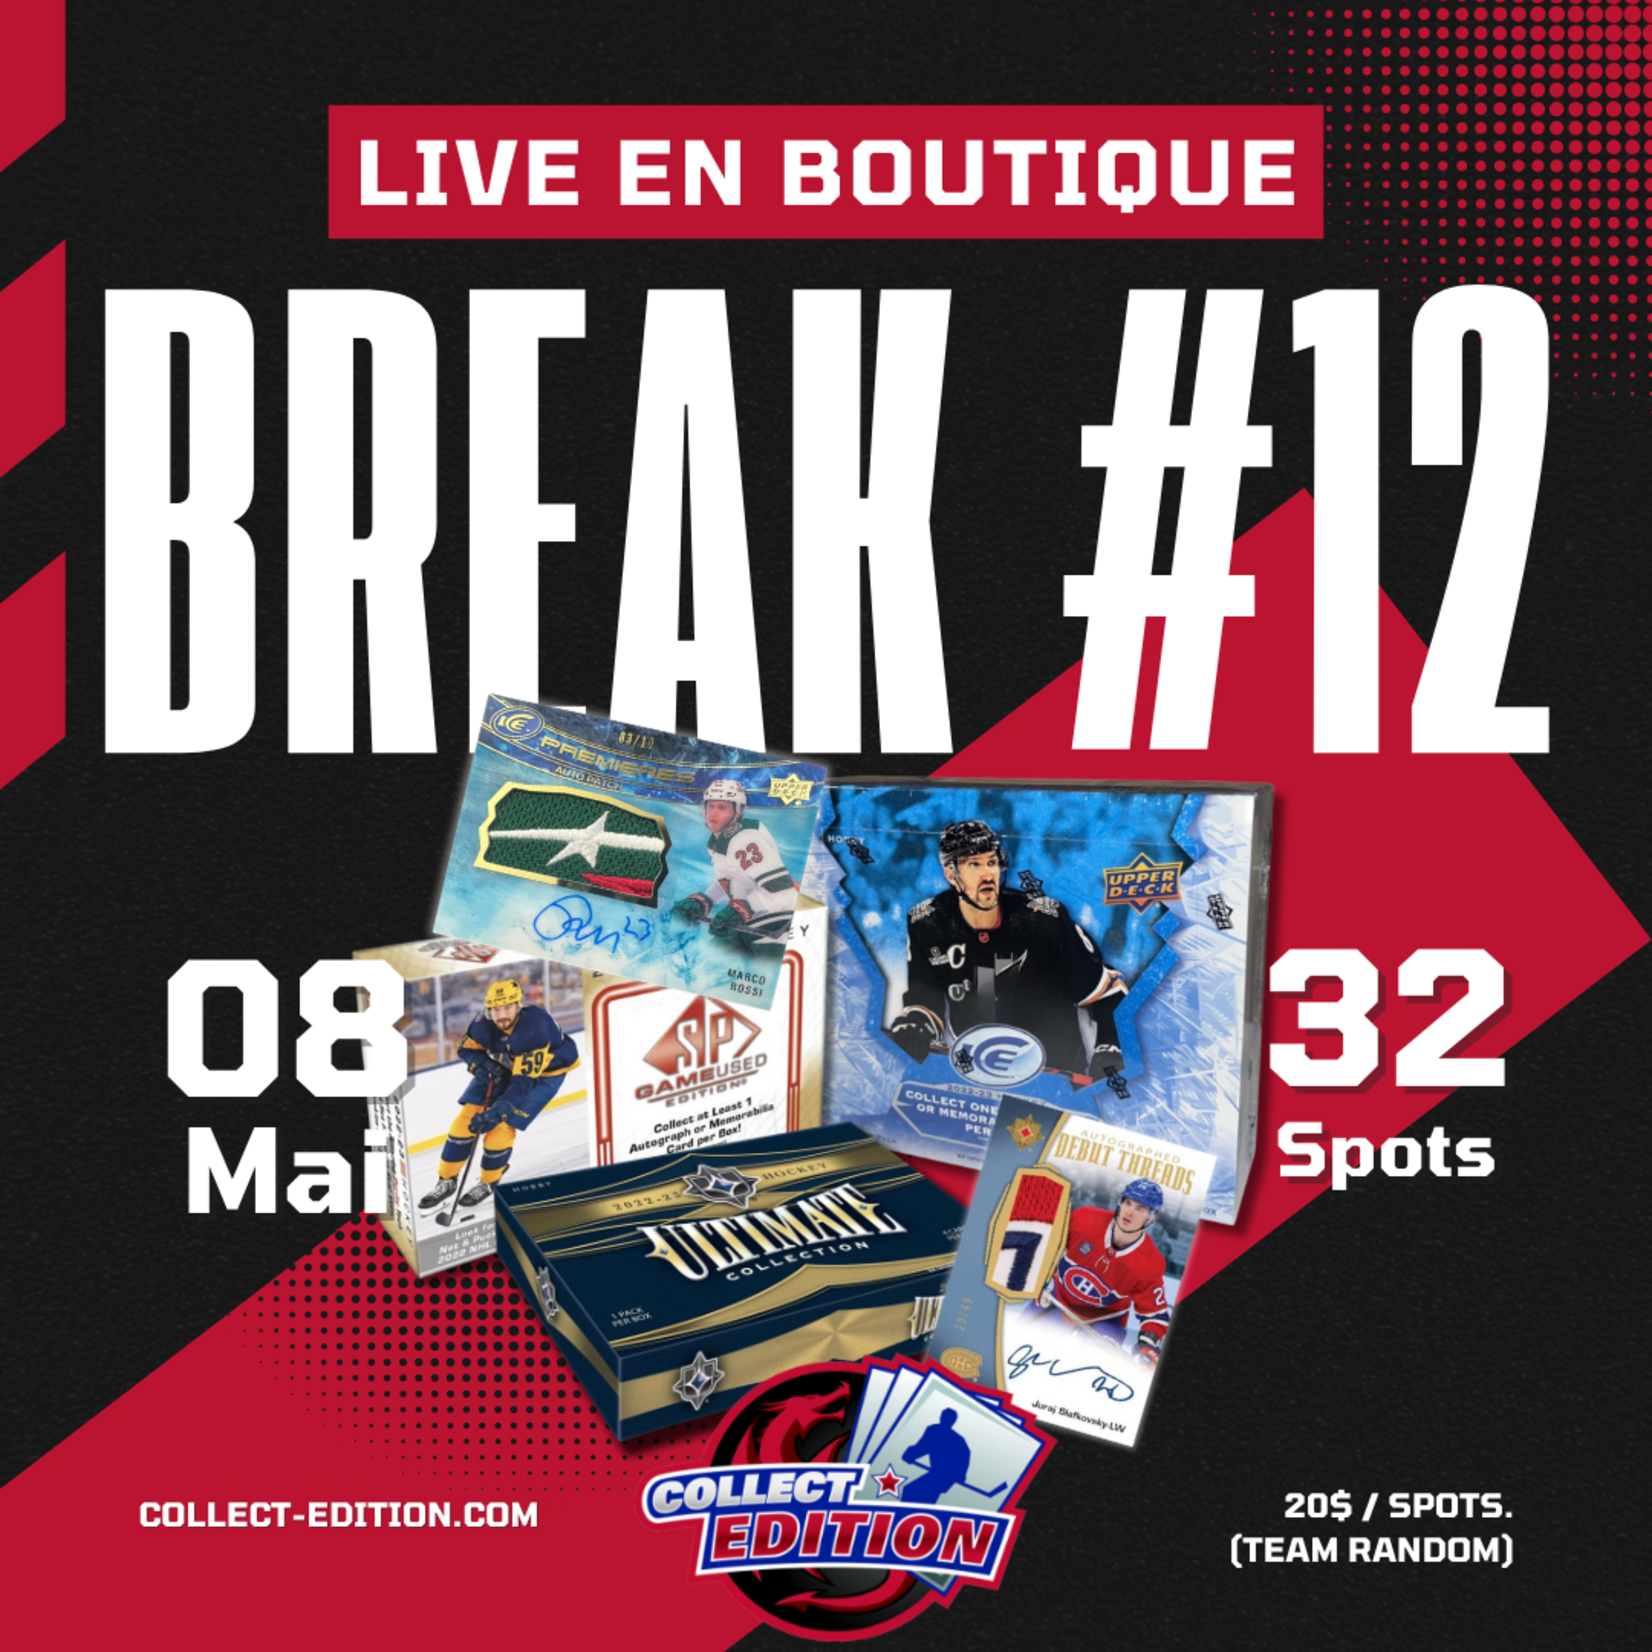 Les Breaks Live au Collect #12 (3 Box mixer - Double Team Random)